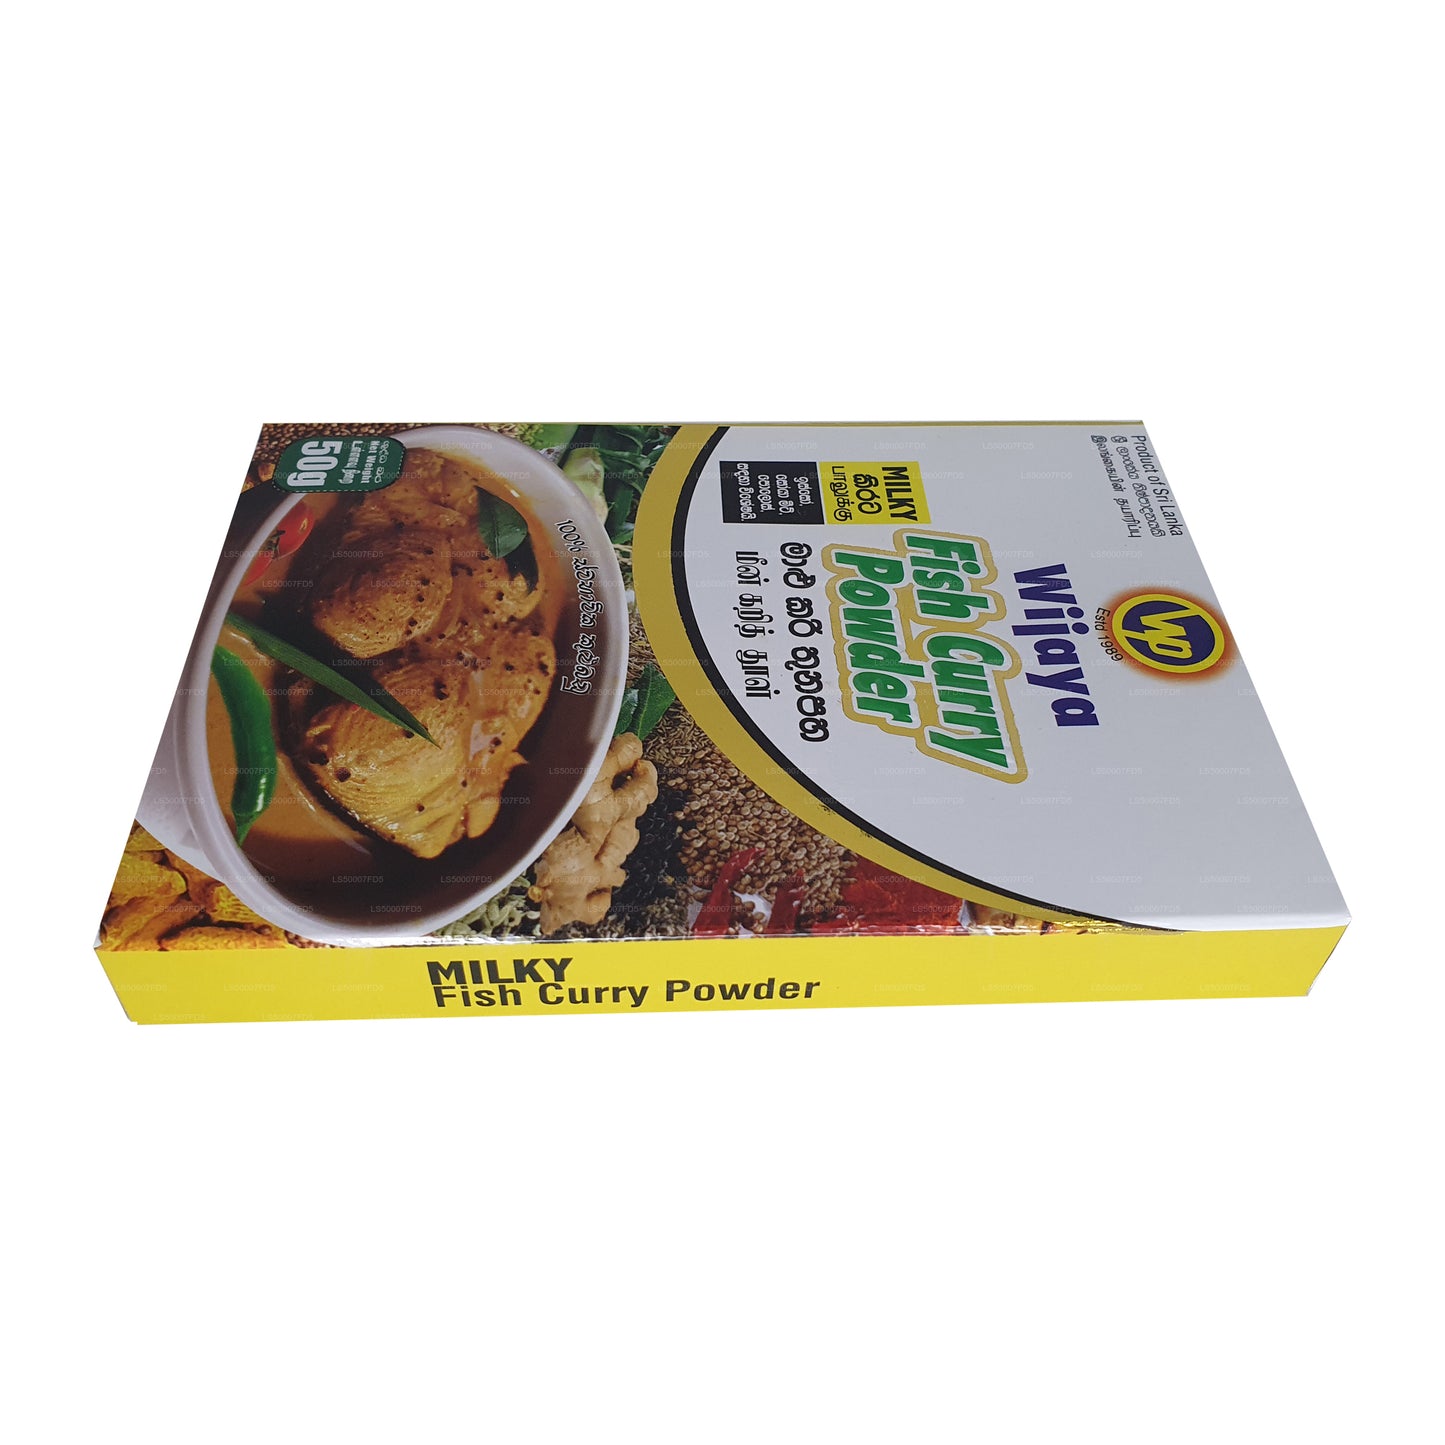 Wijaya Milky Fish Currypulver (50 g)